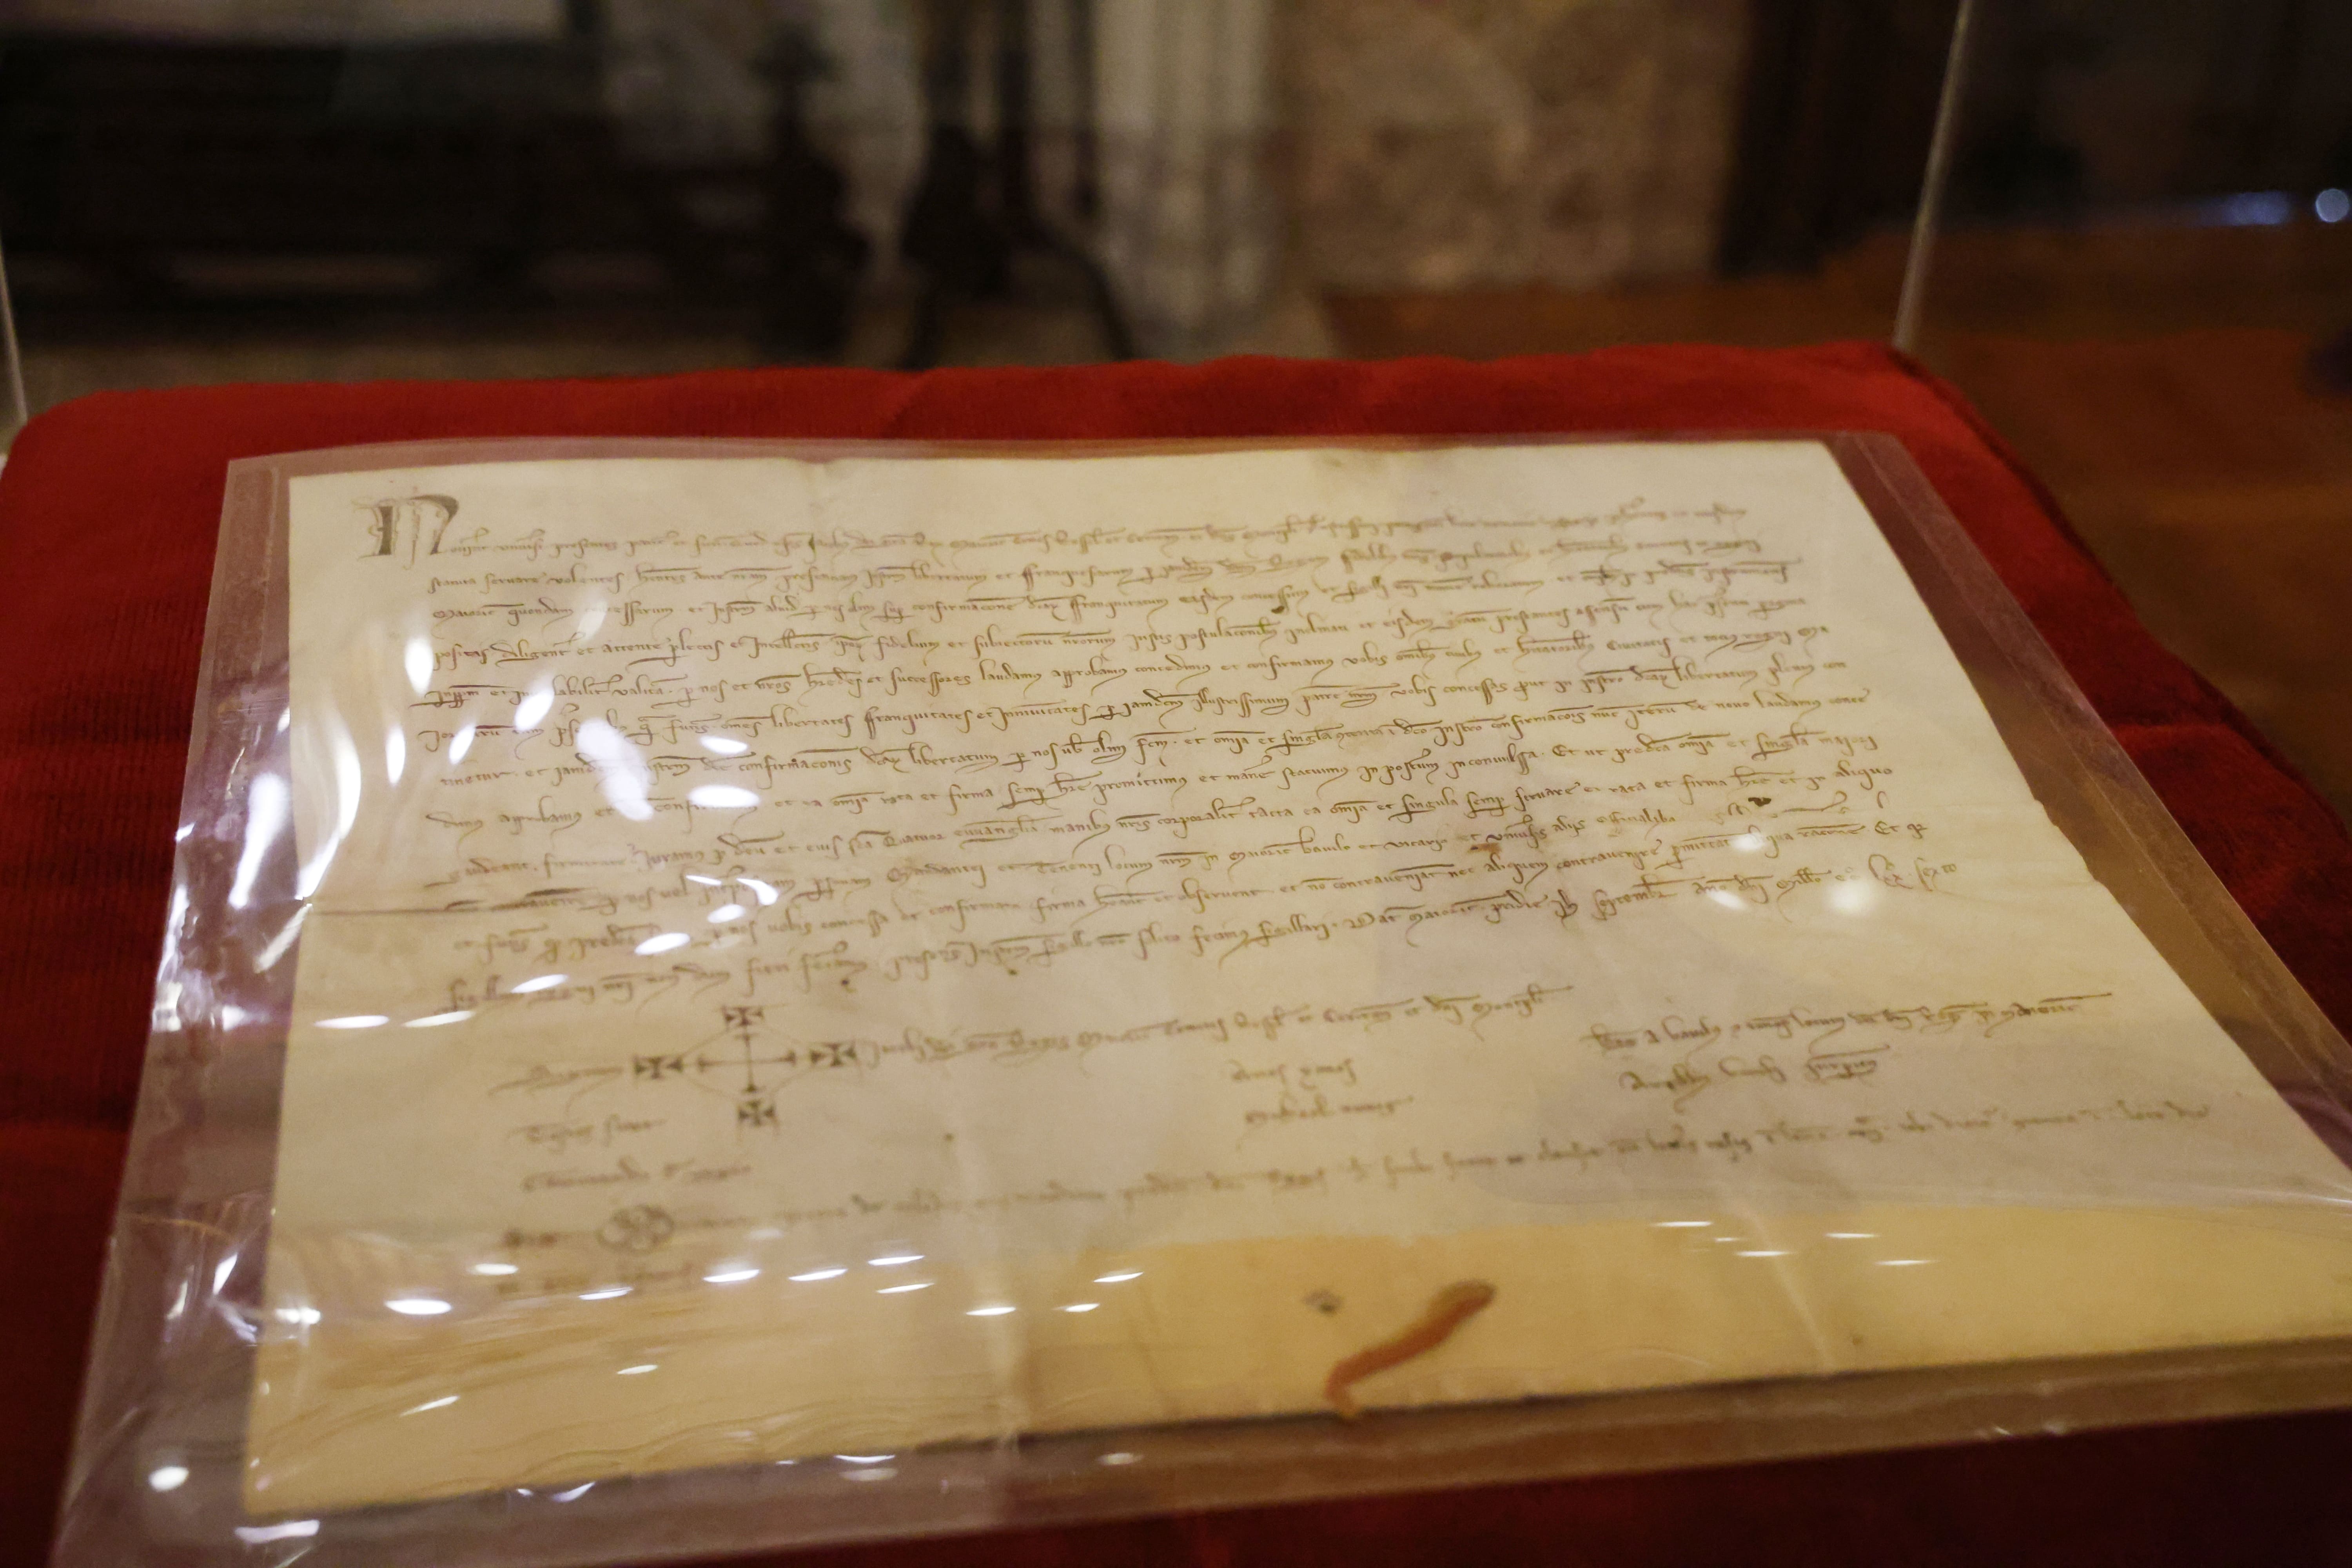 El pergamino original del 12 de septiembre de 1276 que acredita la confirmación de los derechos y privilegios del reino de Mallorca.